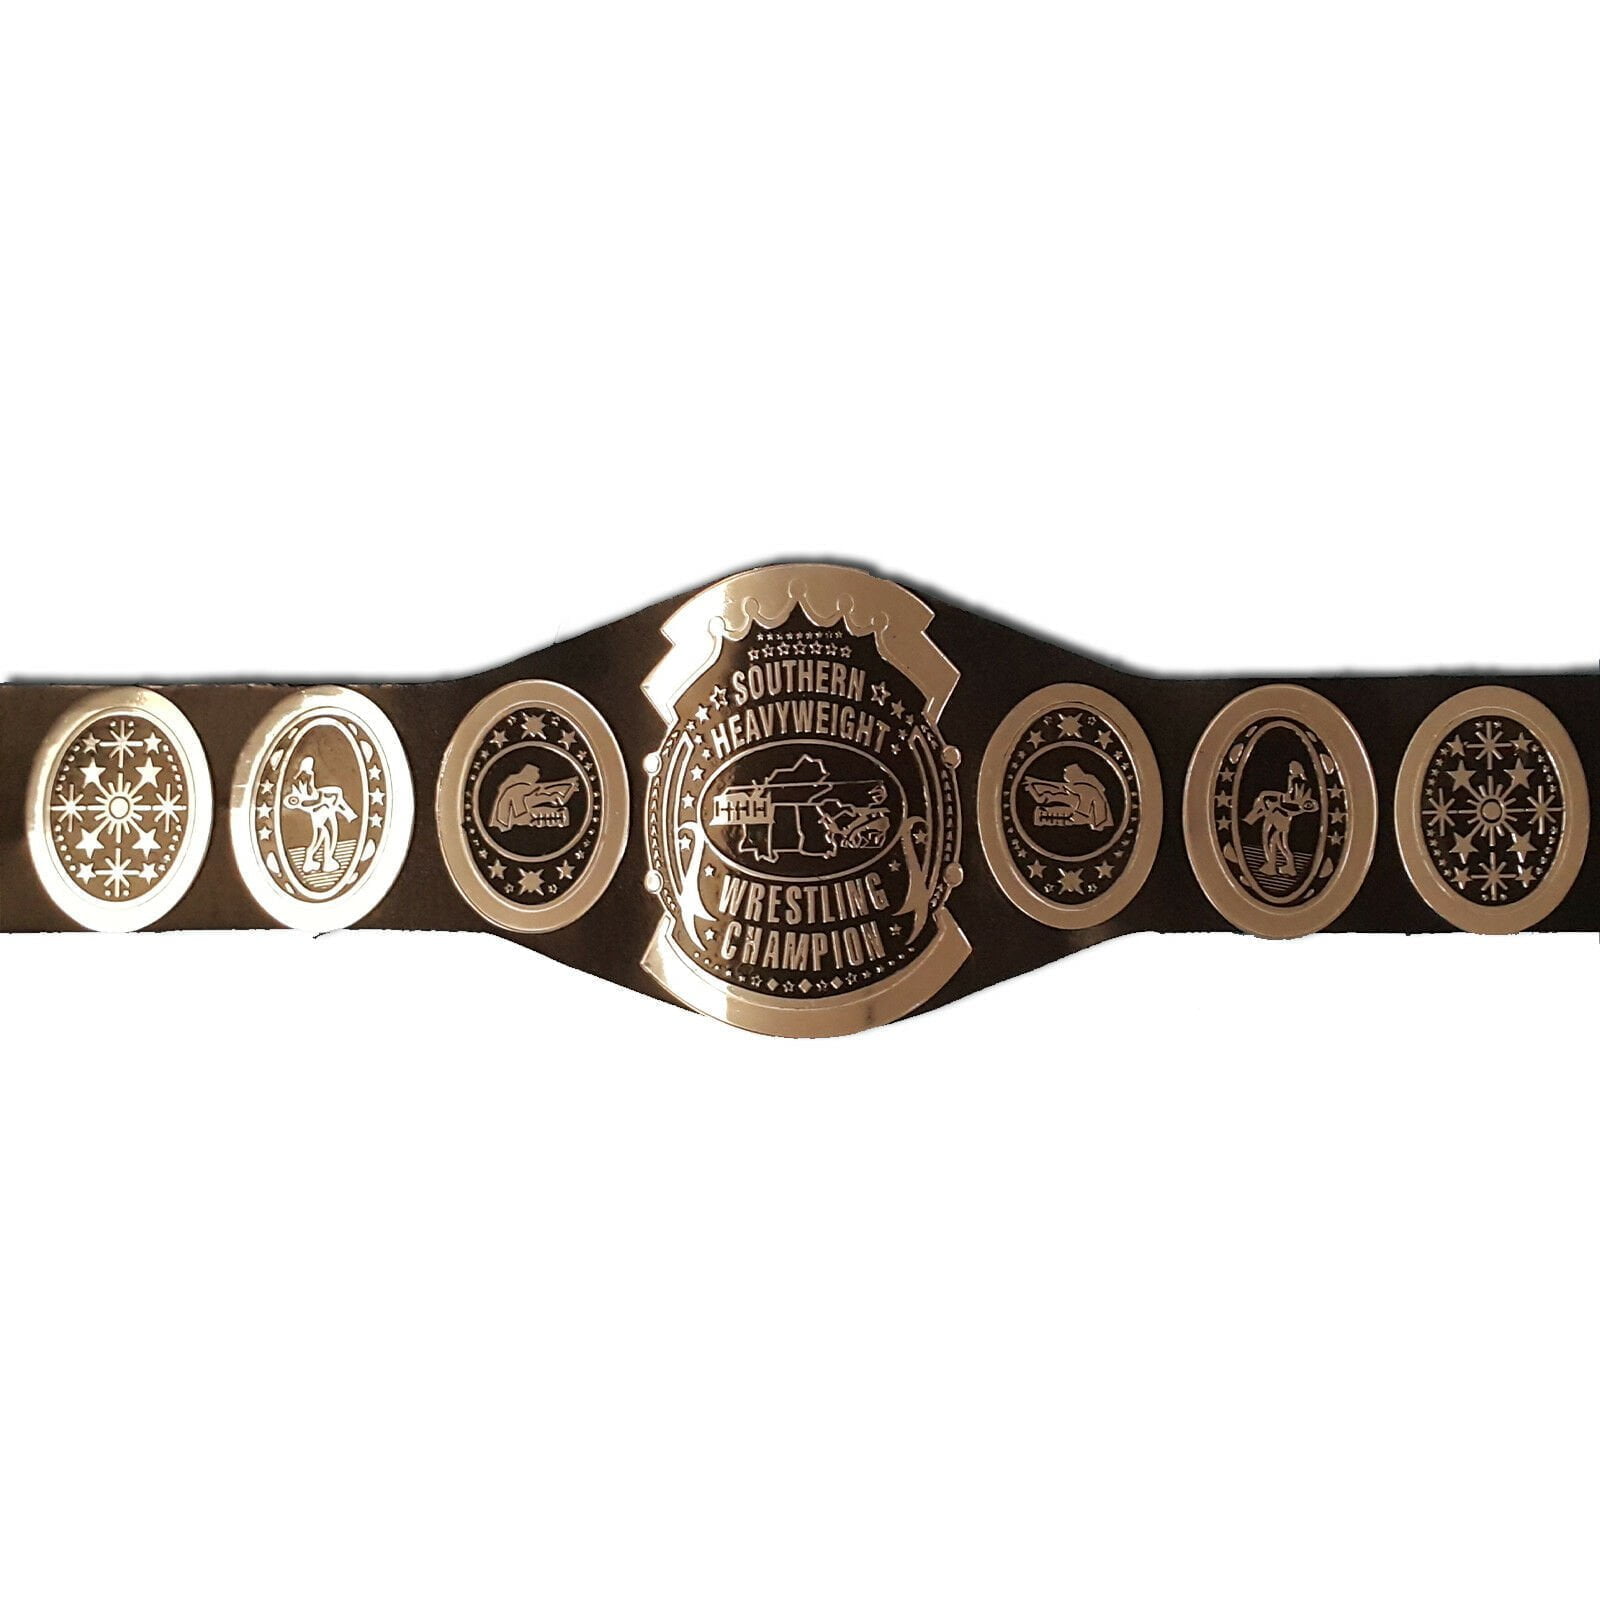 AWA Southern Heavyweight Wrestling Championship Belt Replica